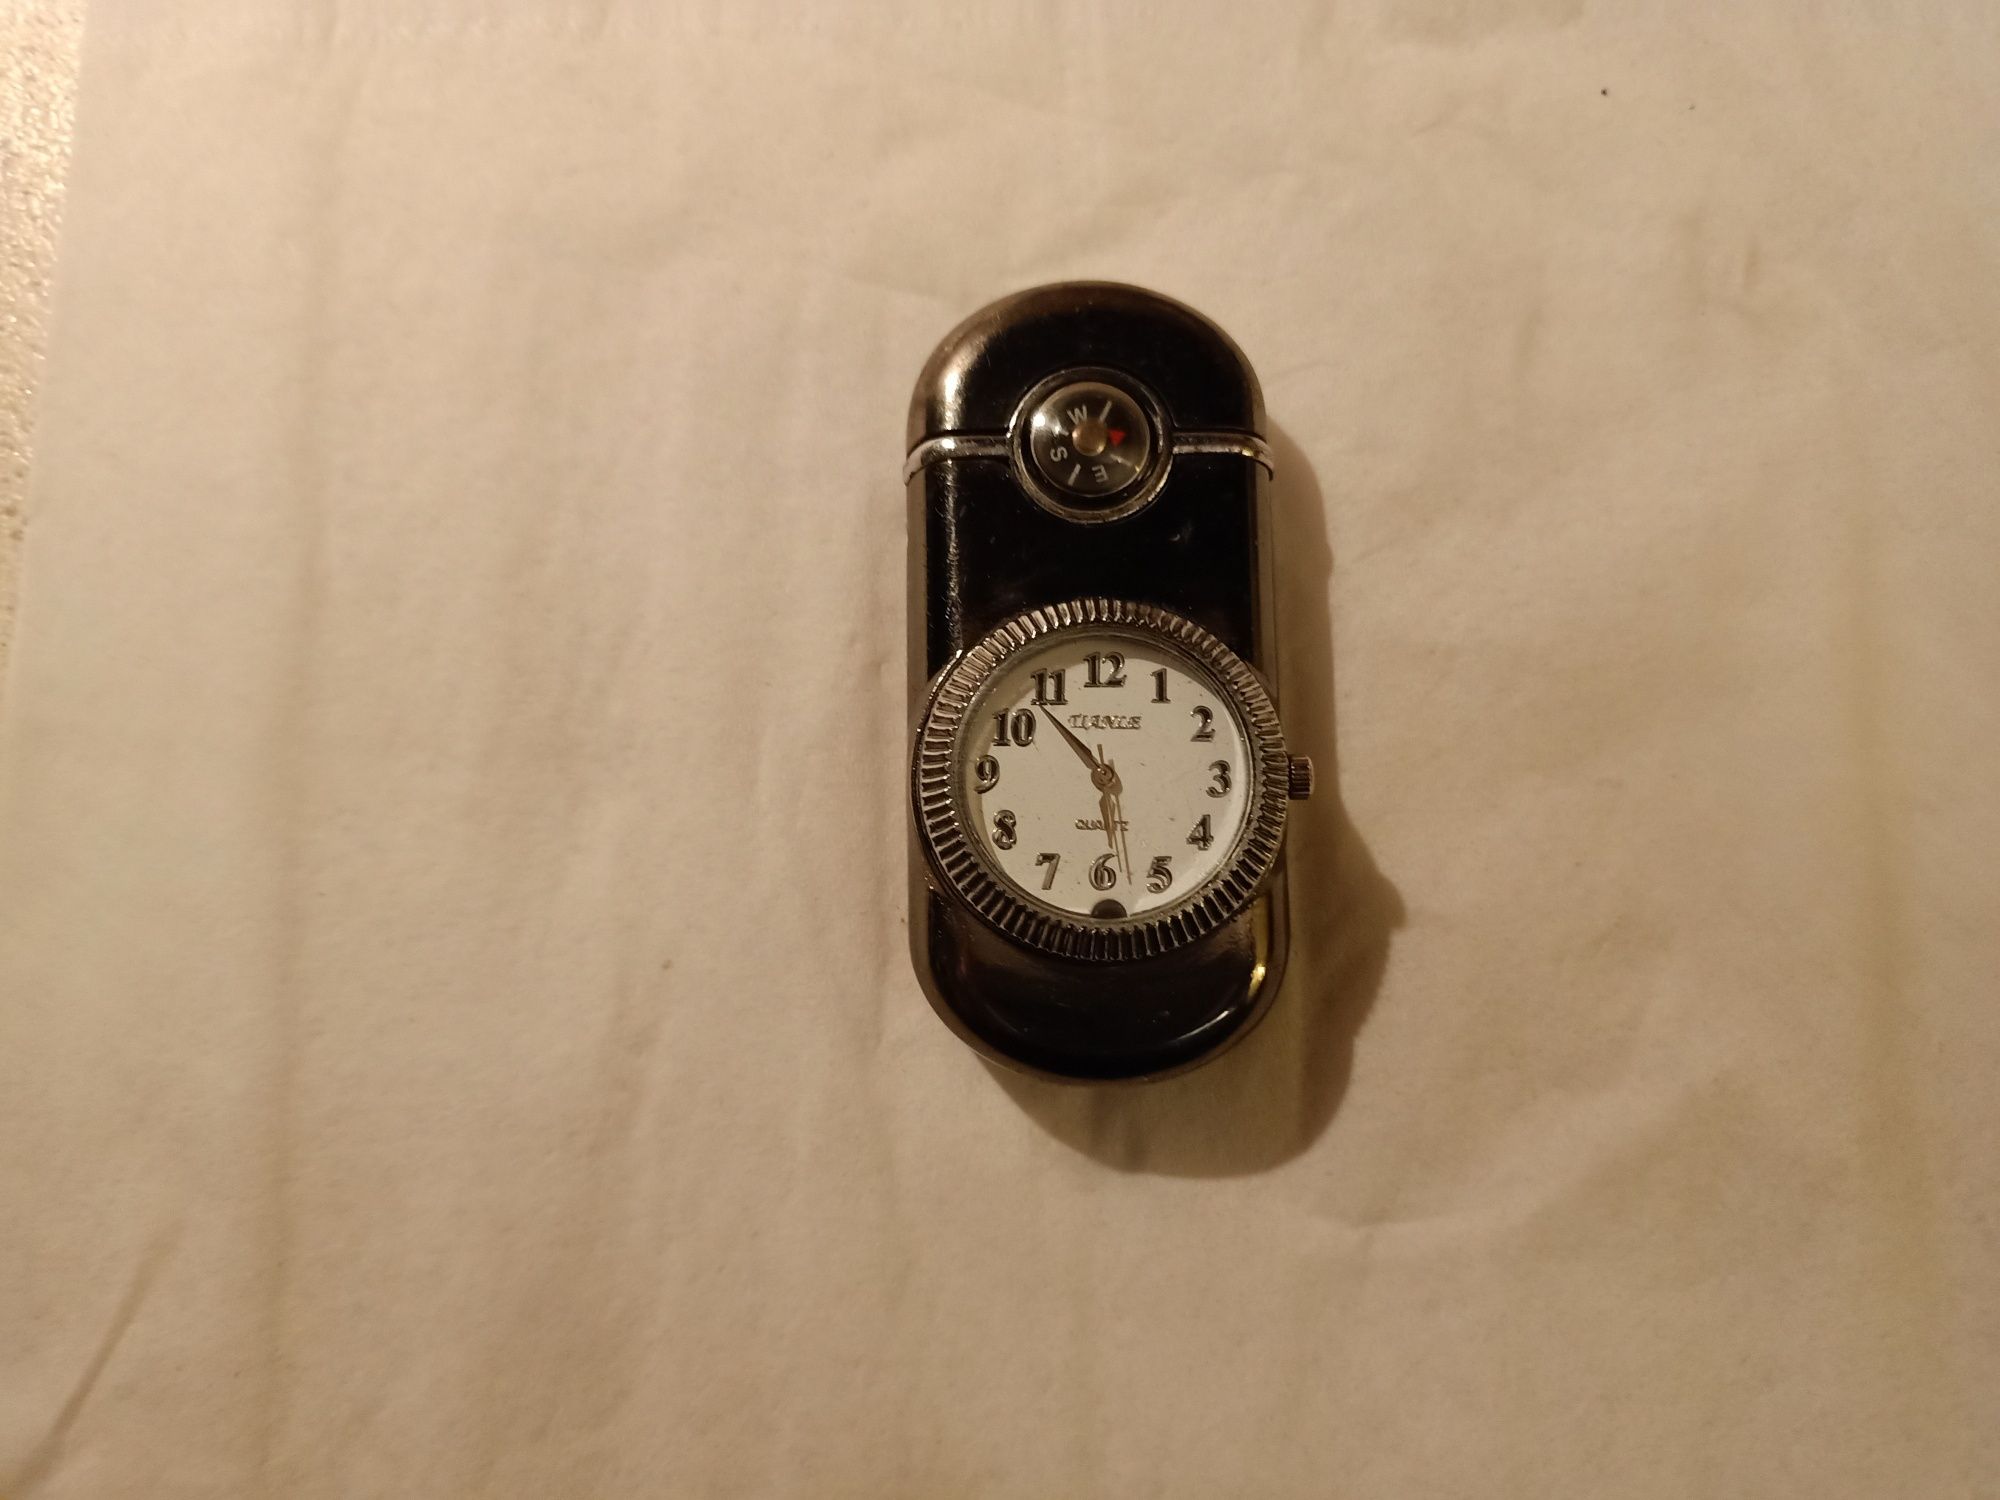 Zegarek Quartz Tianle z zapalniczką i kompasem